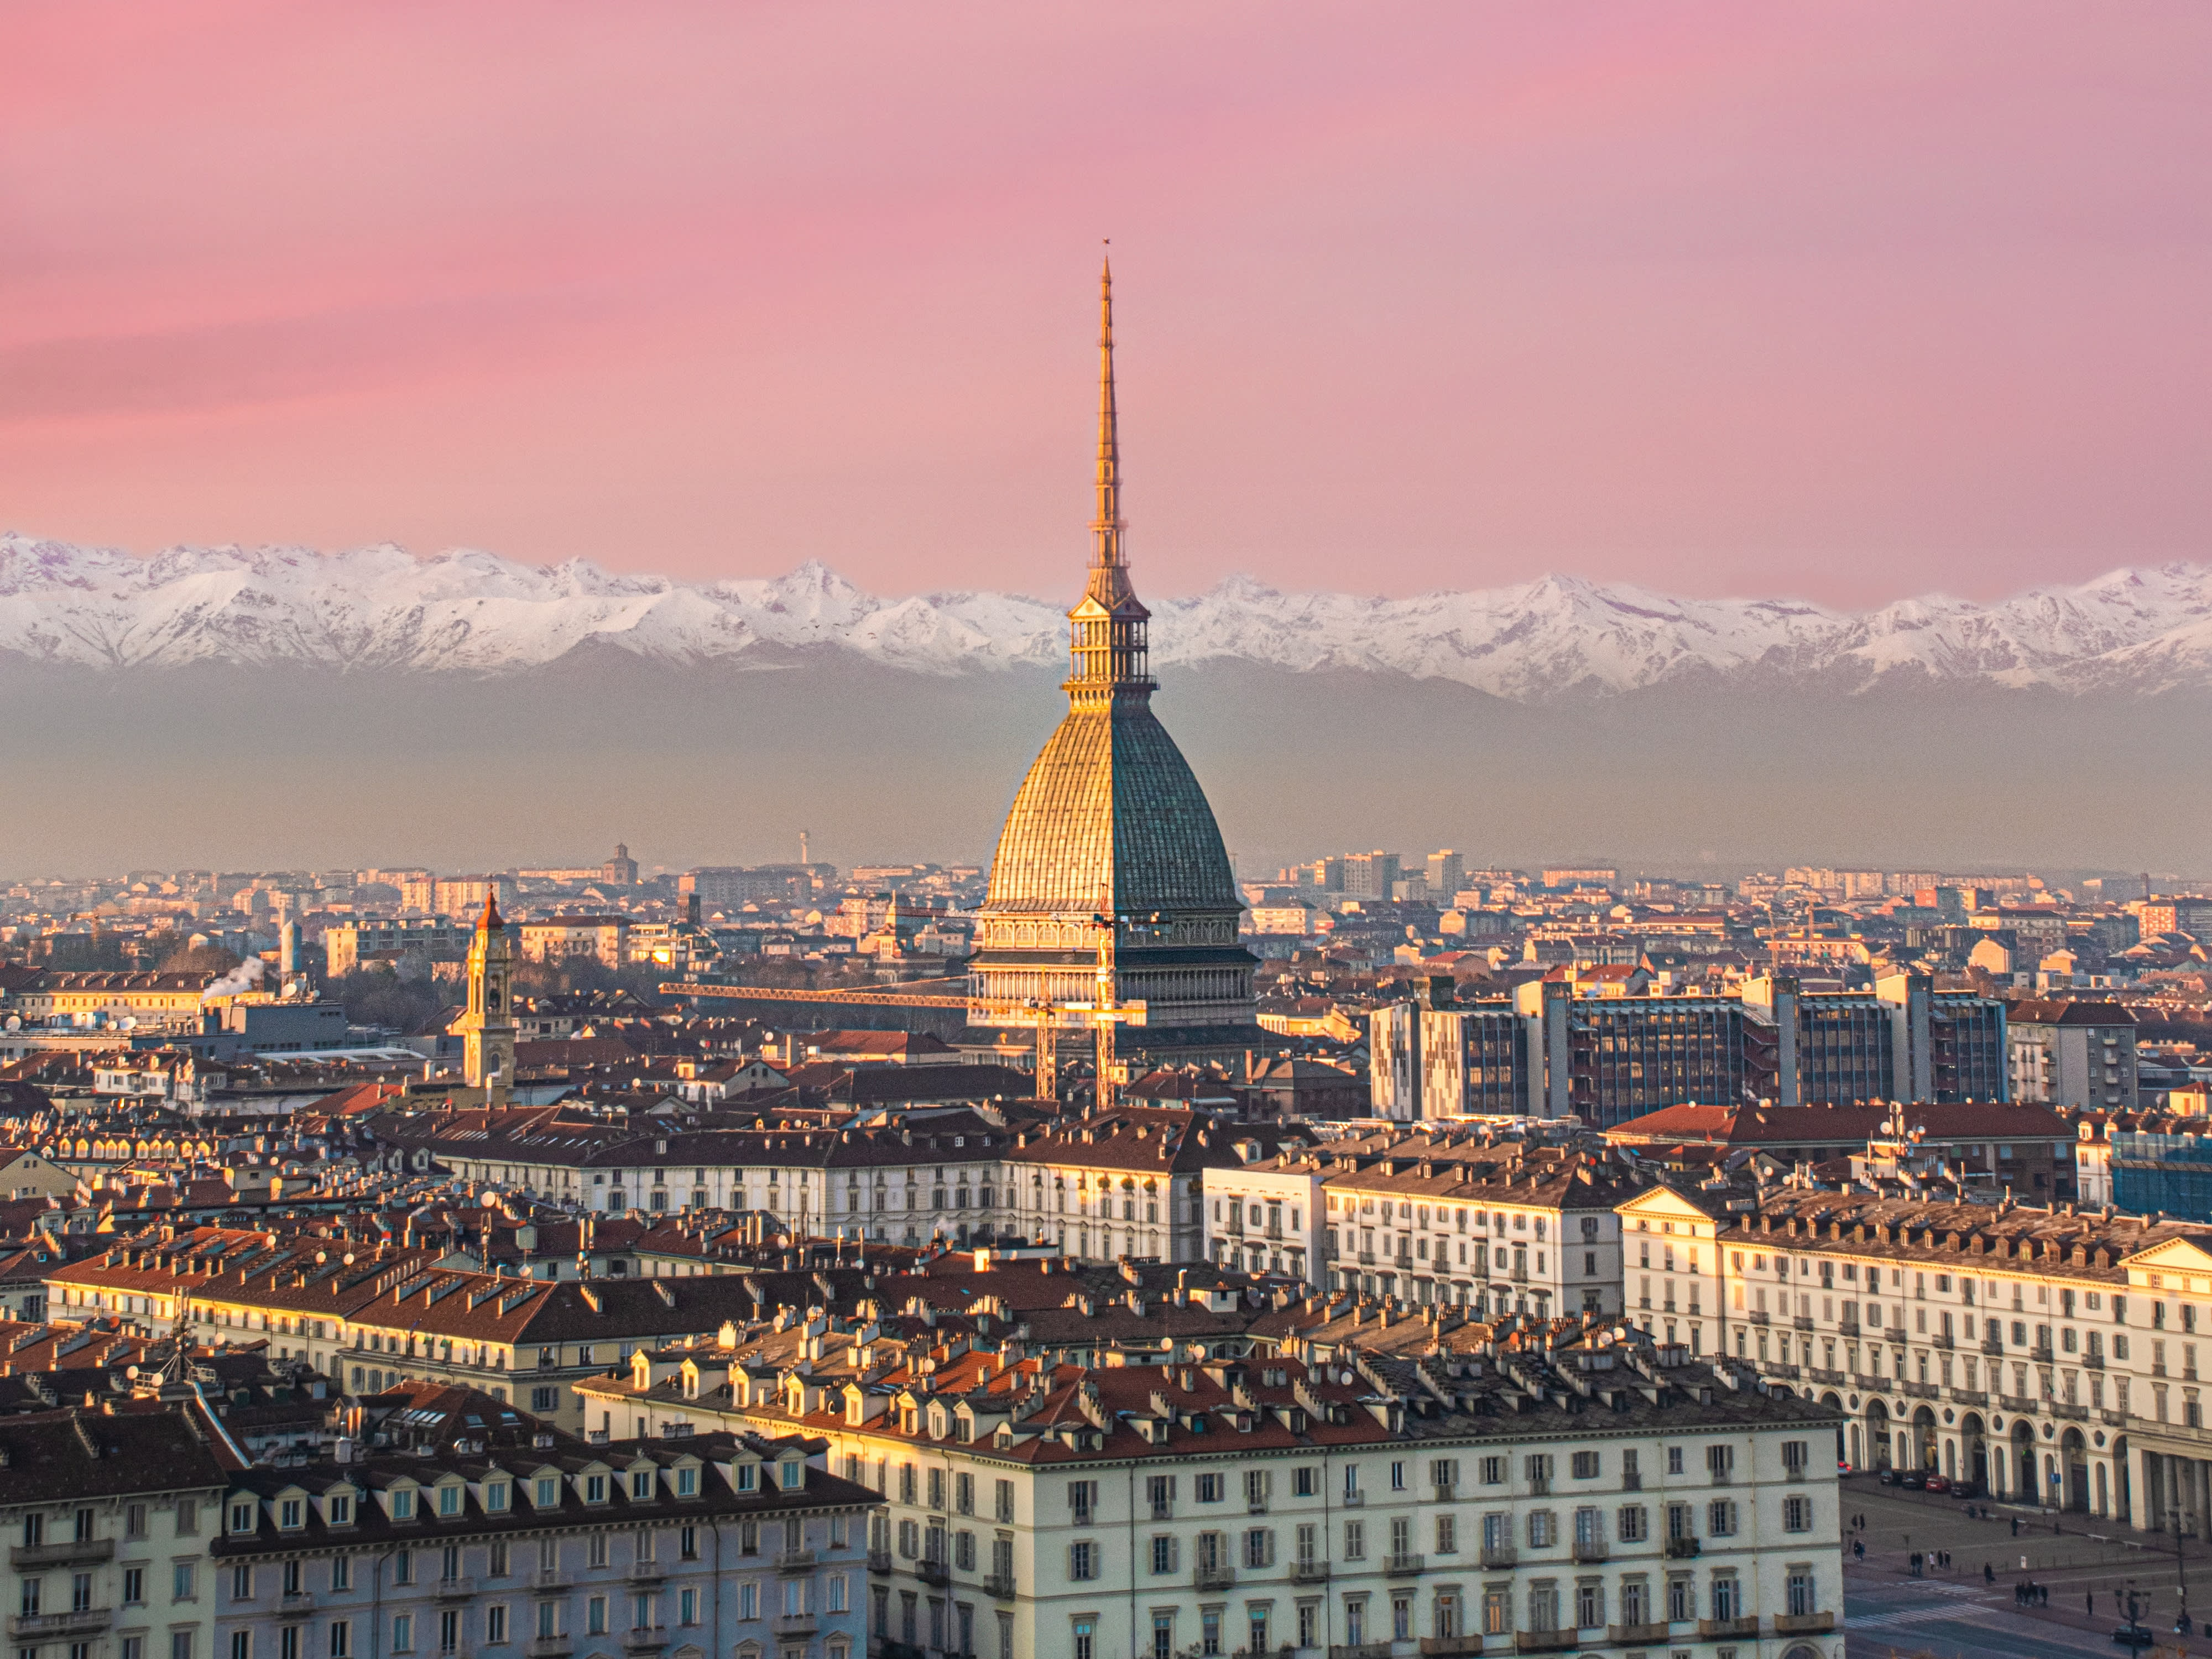 Nếu bạn đang tìm kiếm địa điểm tốt để sinh sống tại Ý vào năm 2024, thì đây chính là bài viết dành cho bạn! Hãy xem hình ảnh để biết thêm về những địa điểm đẹp nhất của Ý và tìm ra cho mình một nơi để sống mơ ước. Giải trí và khám phá những điều mới lạ chưa từng có tại những nơi đó!